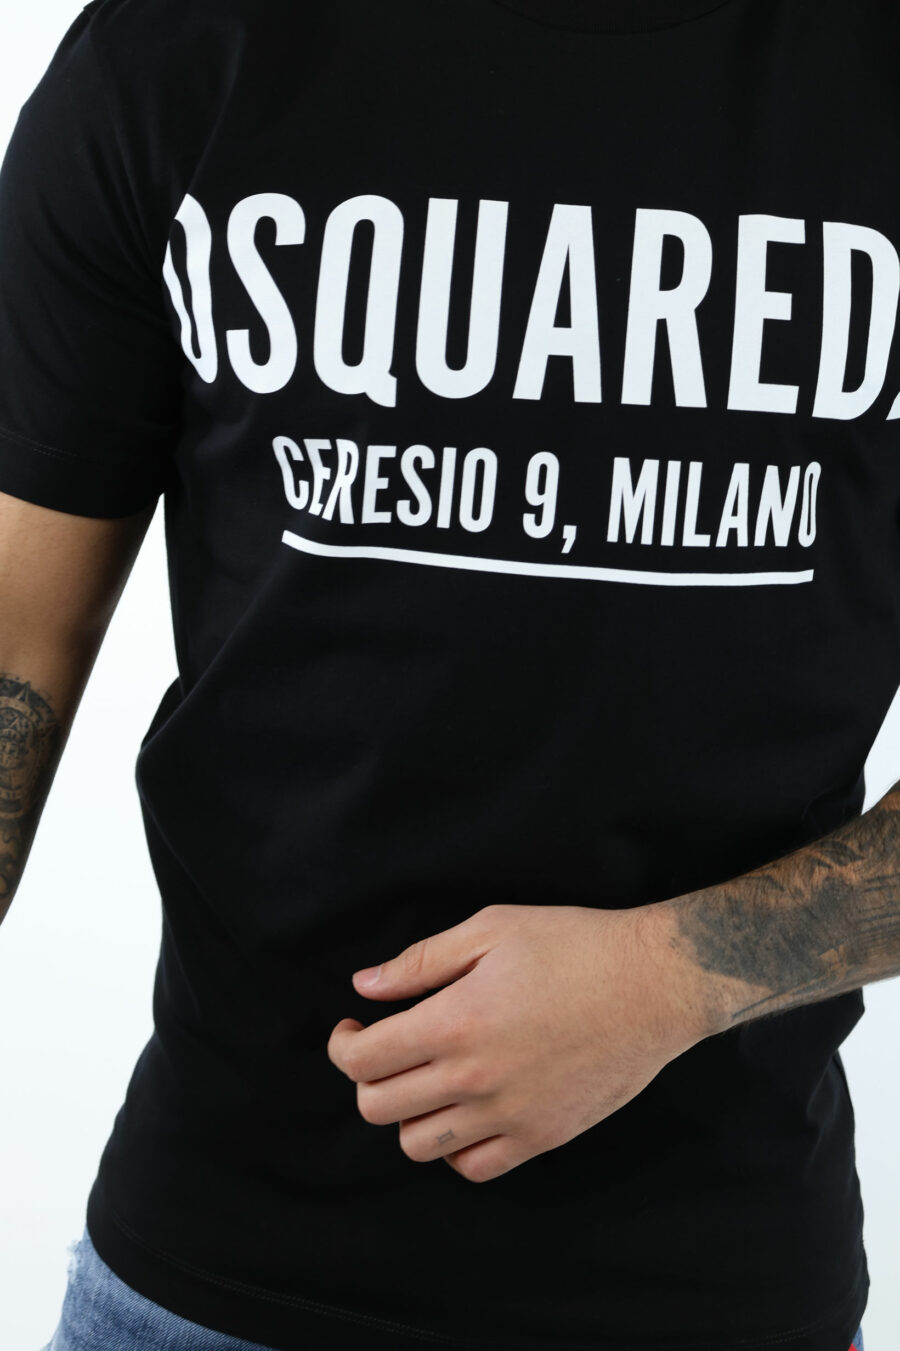 T-shirt noir avec maxilogo "ceresio 9 milano" - 106863